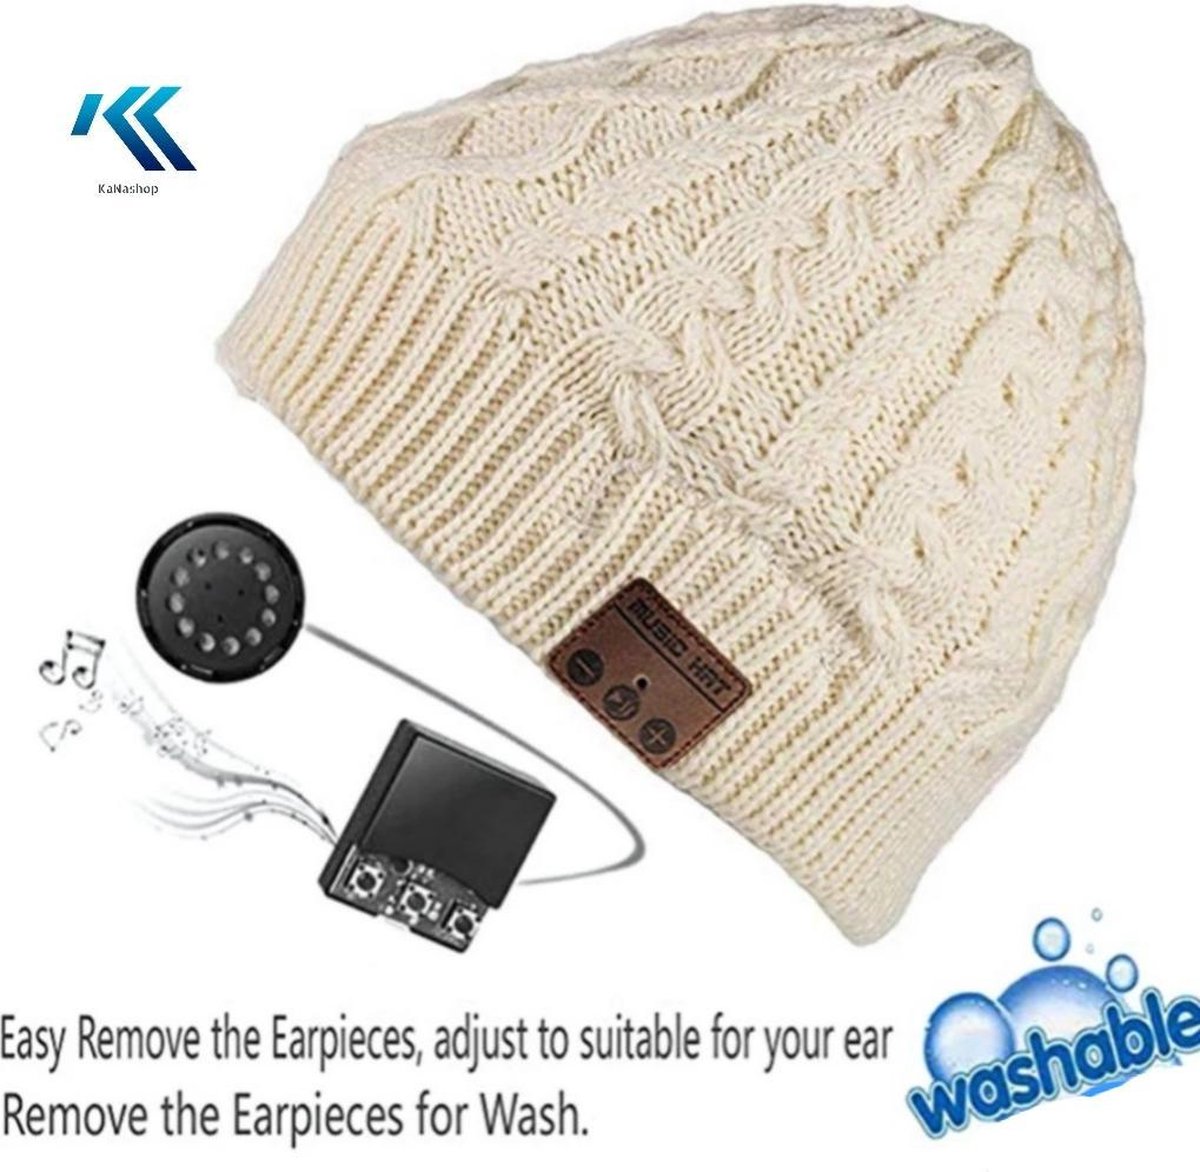 Bonnet d'hiver Bluetooth avec casque et mains libres